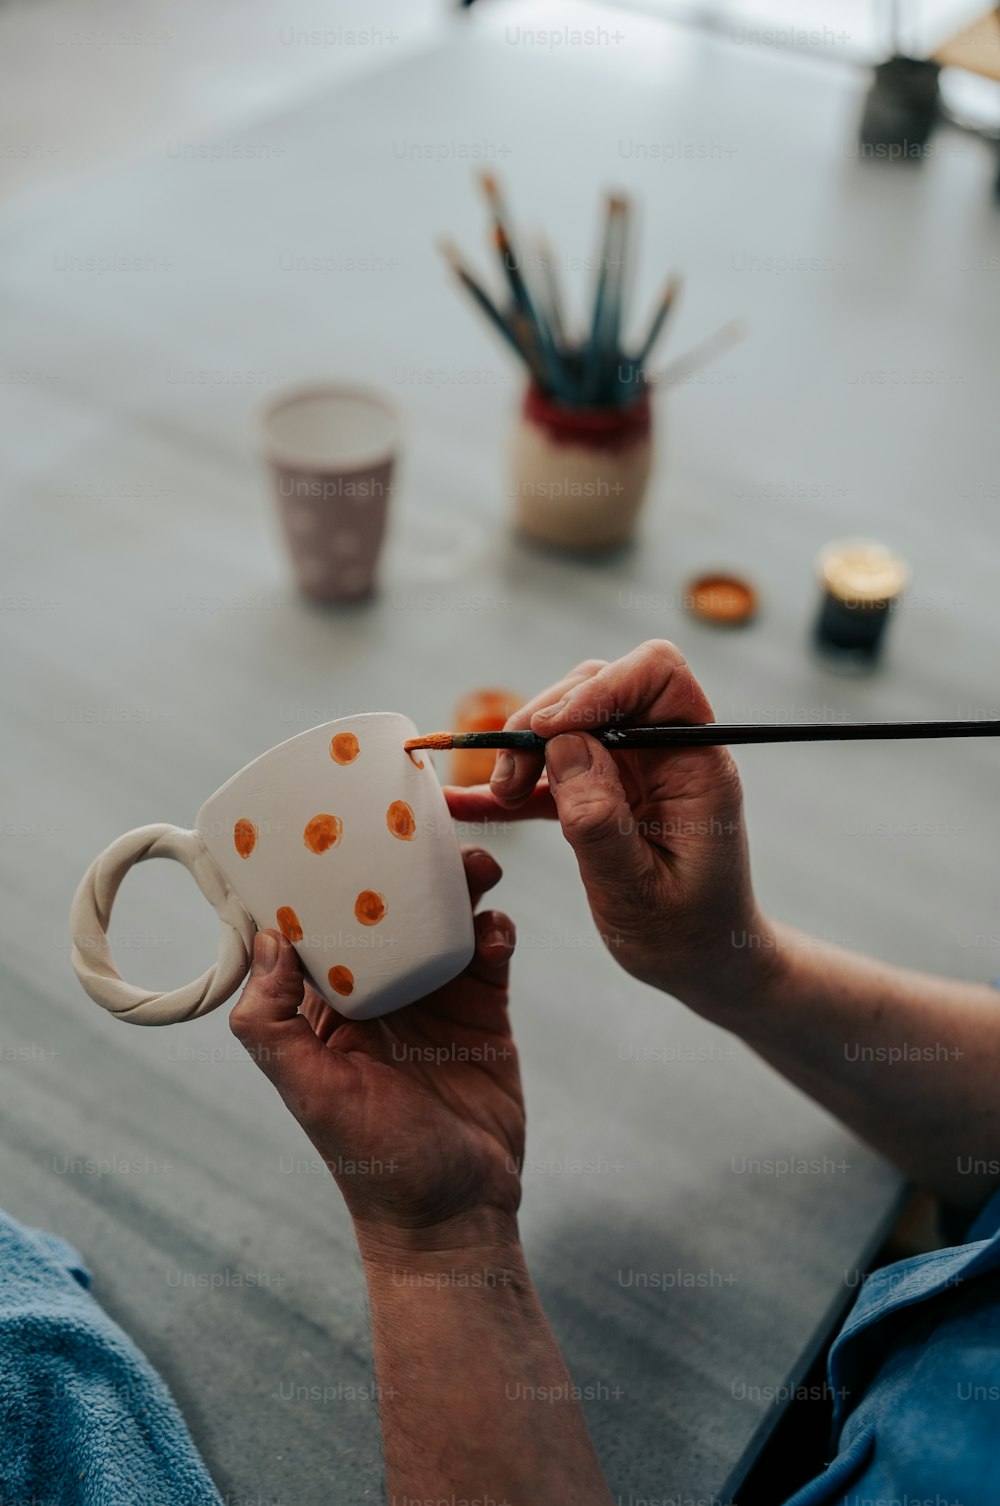 Una persona pintando una taza con un pincel